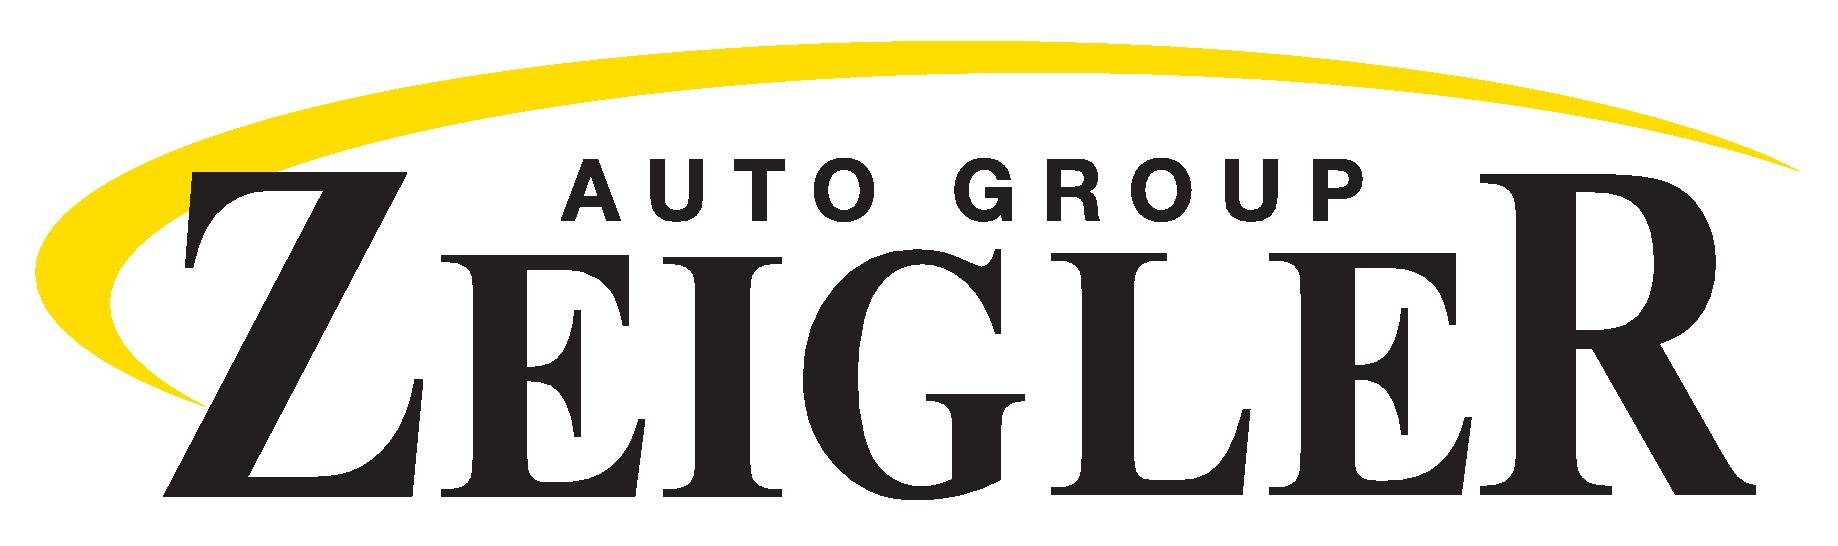 Zeigler Auto Group-high res-jpeg (2).jpg